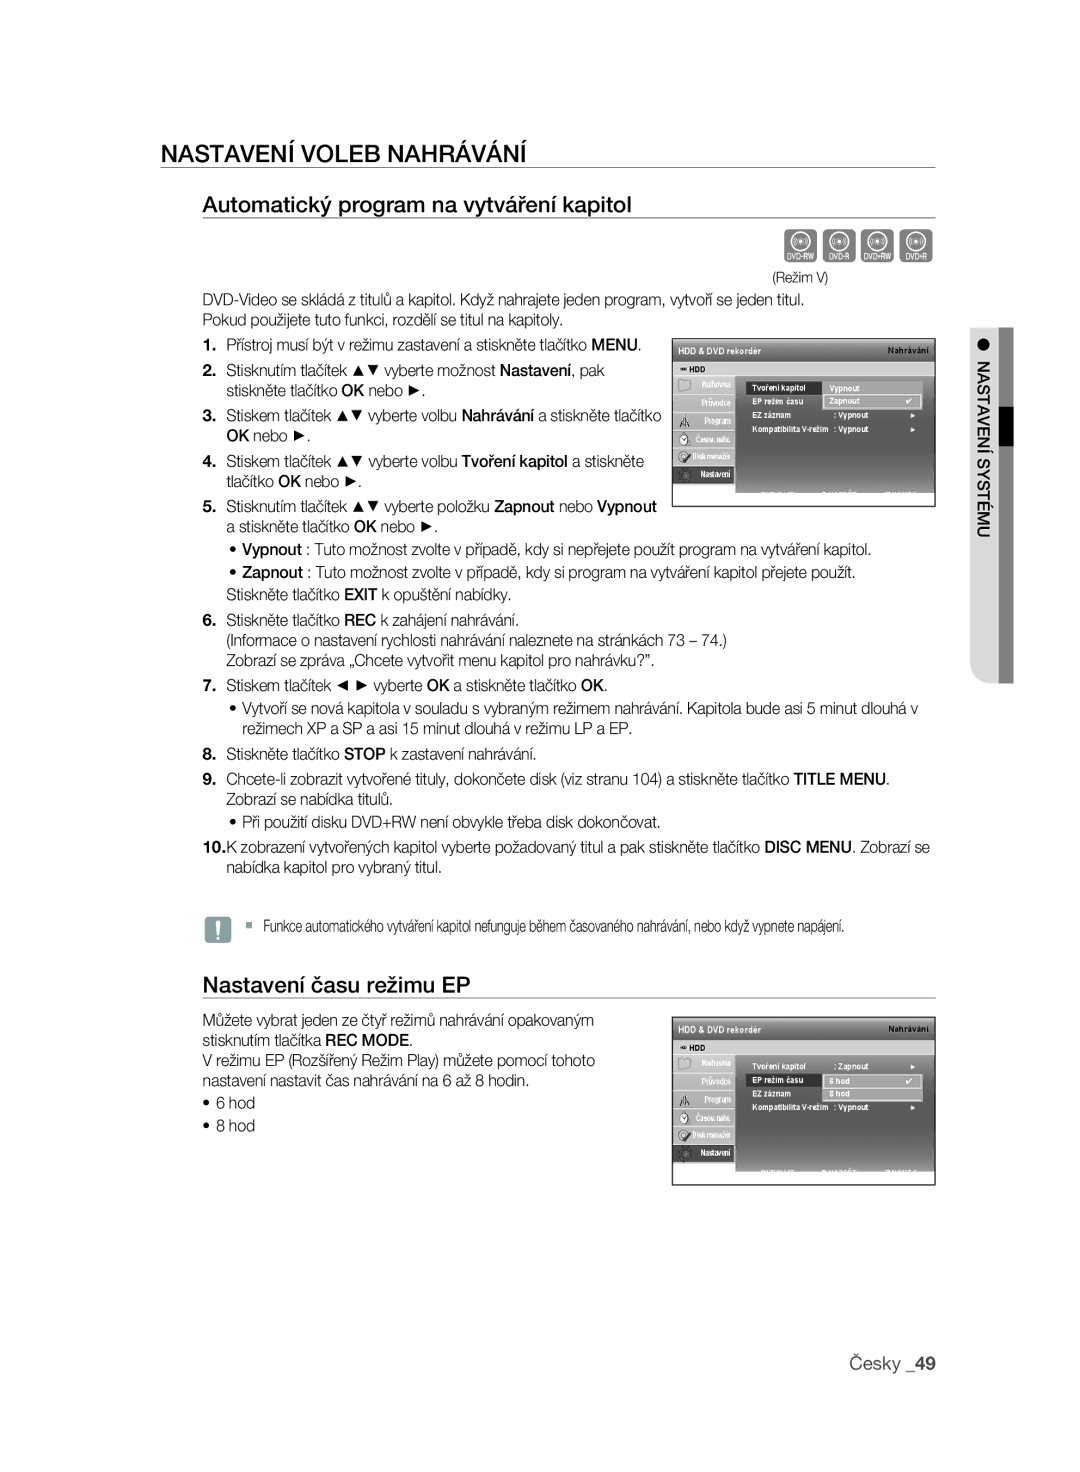 Samsung DVD-SH893/EDC manual Nastavení Voleb Nahrávání, Automatický program na vytváření kapitol, Nastavení času režimu EP 